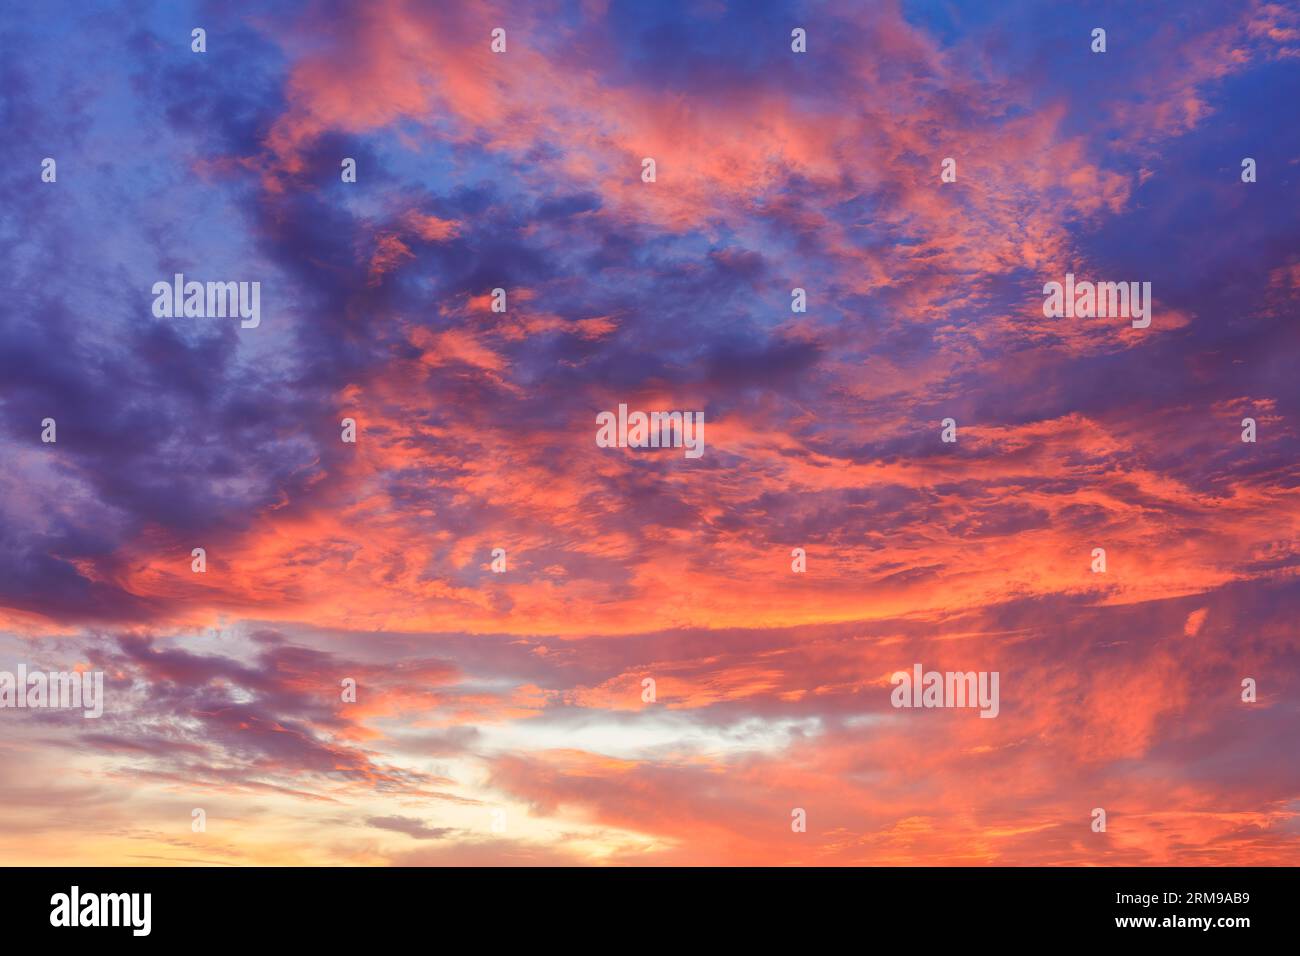 Feuer Sonnenaufgang Himmel hinter dem Hintergrund. Leuchtendes Feuer, dramatische Blau-, Rot- und Gelbtöne. Stockfoto